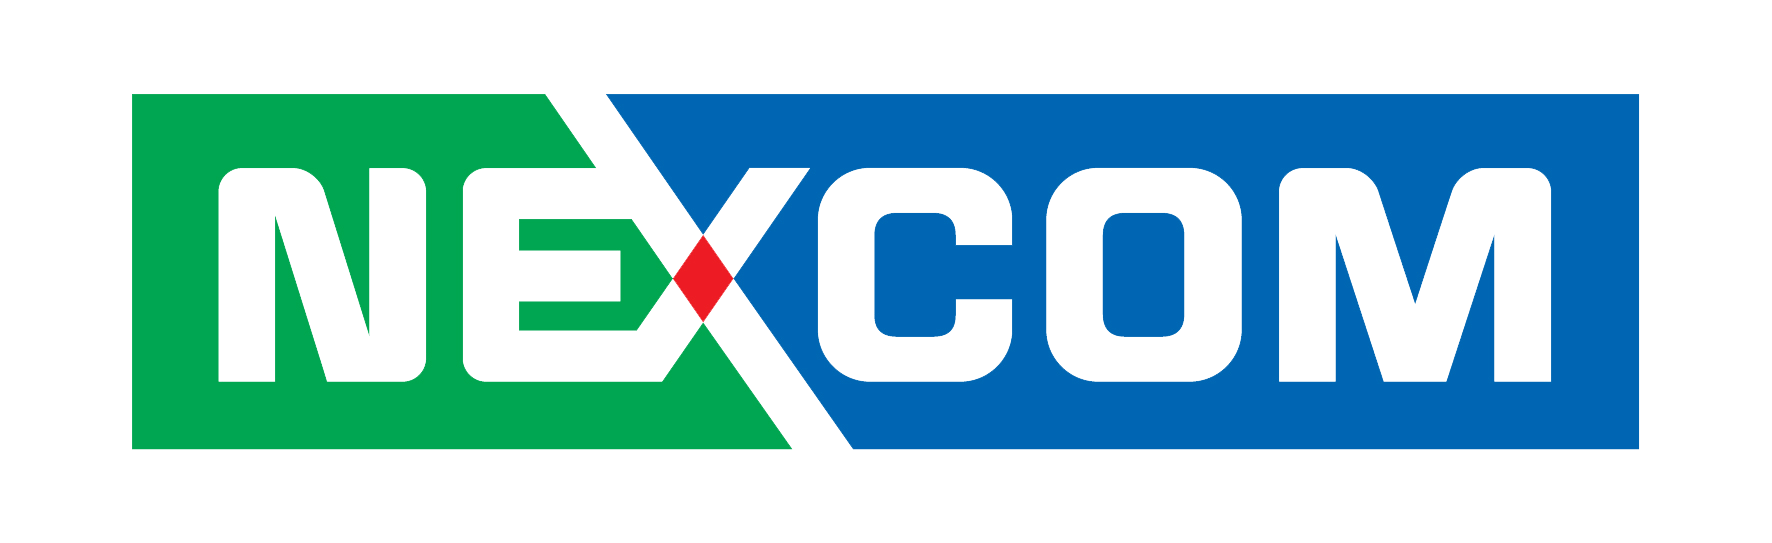 Nexcom-logo